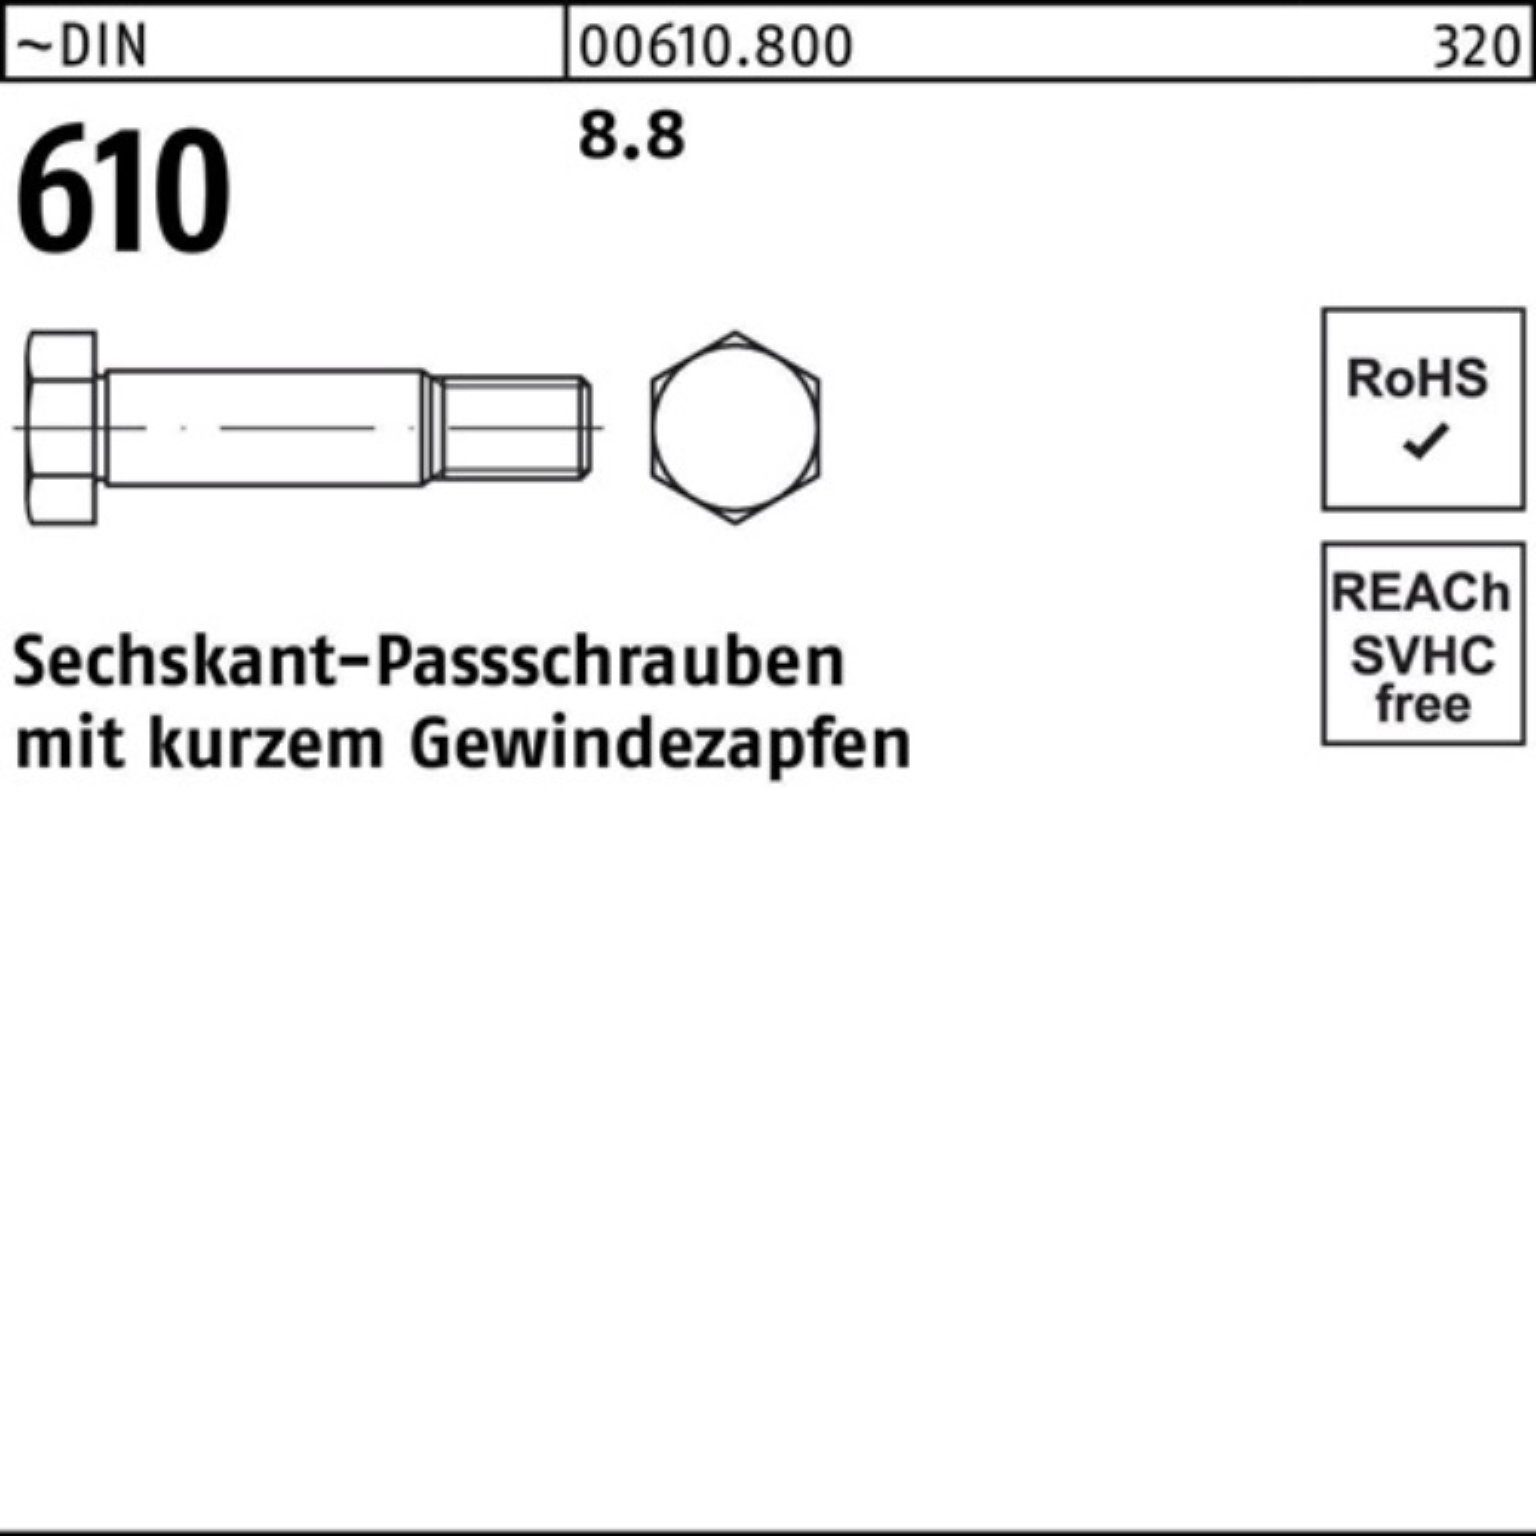 Reyher Schraube 100er Pack Sechskantpassschraube Gewindezapfen 120 DIN 610 kurzem M20x